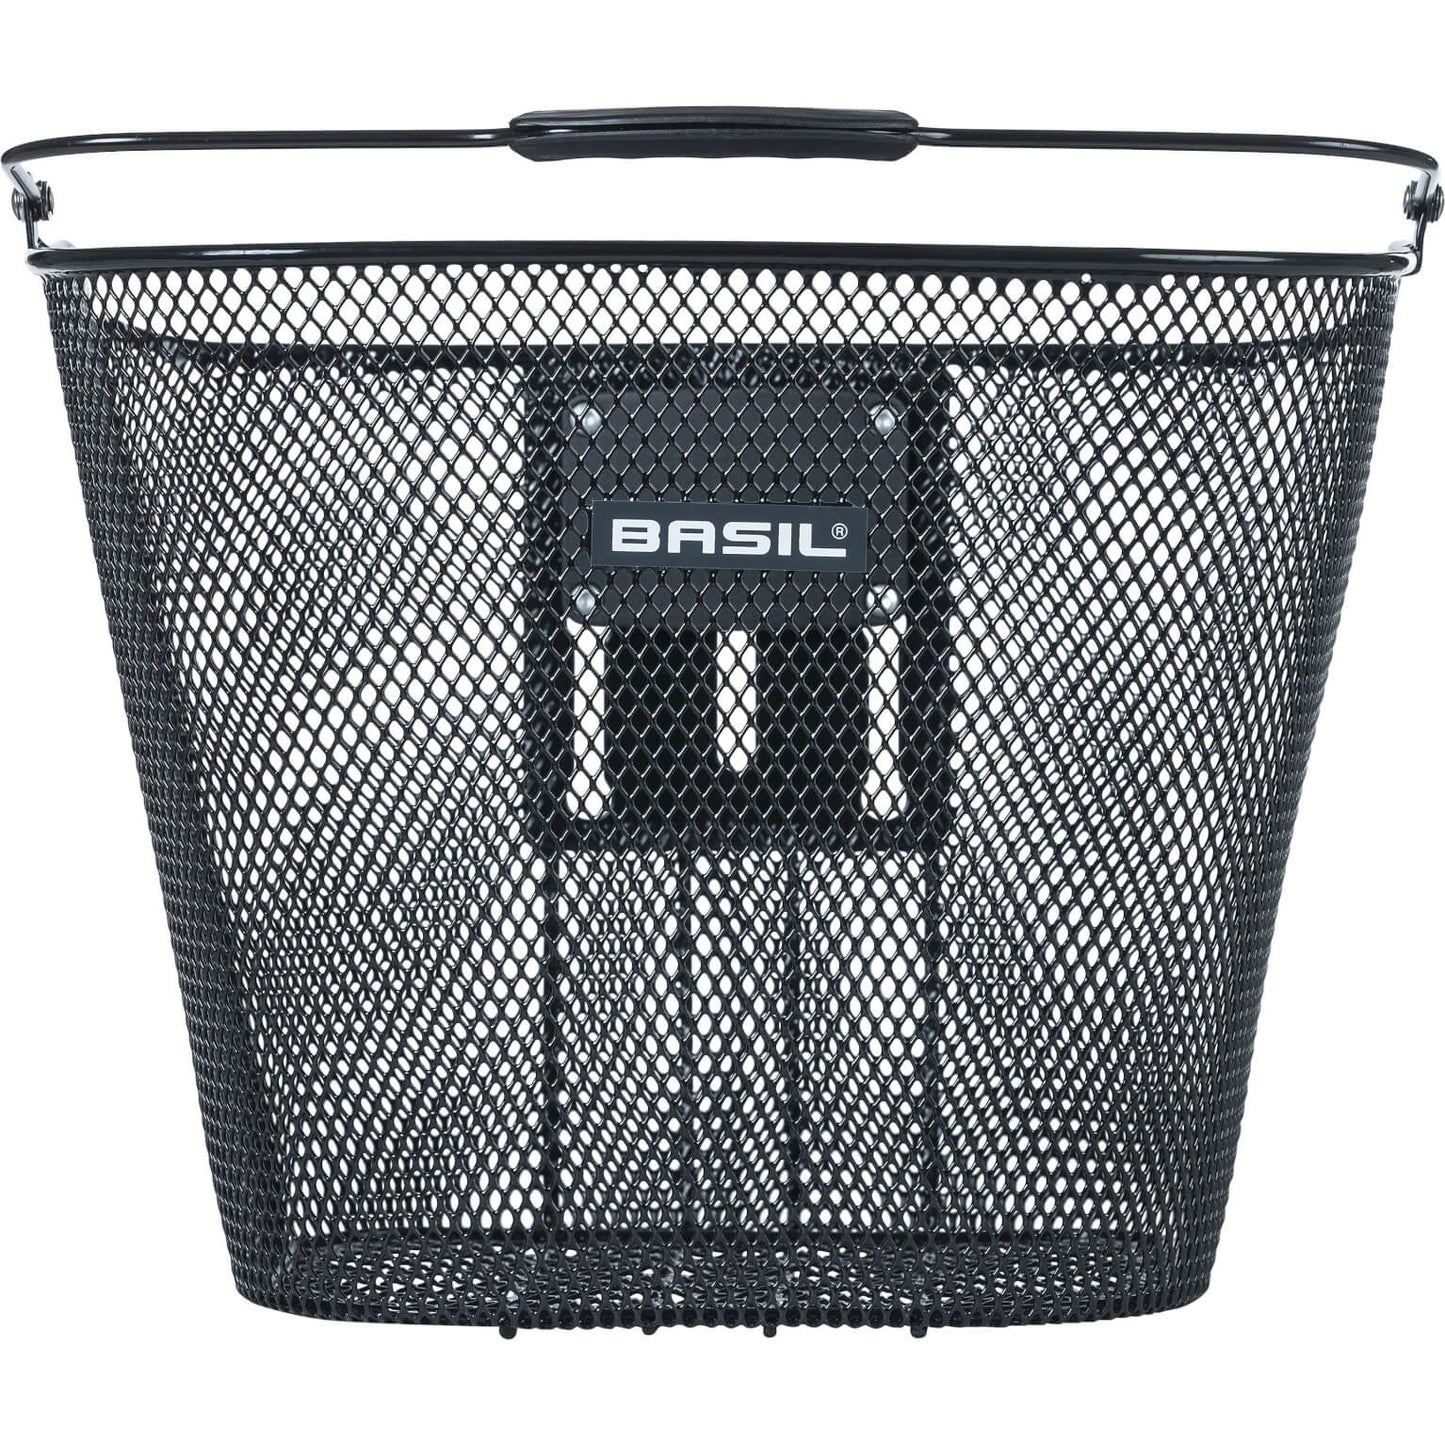 Basil Bremen Be - Canasta de bicicletas - incluido el soporte de tallo basura - negro